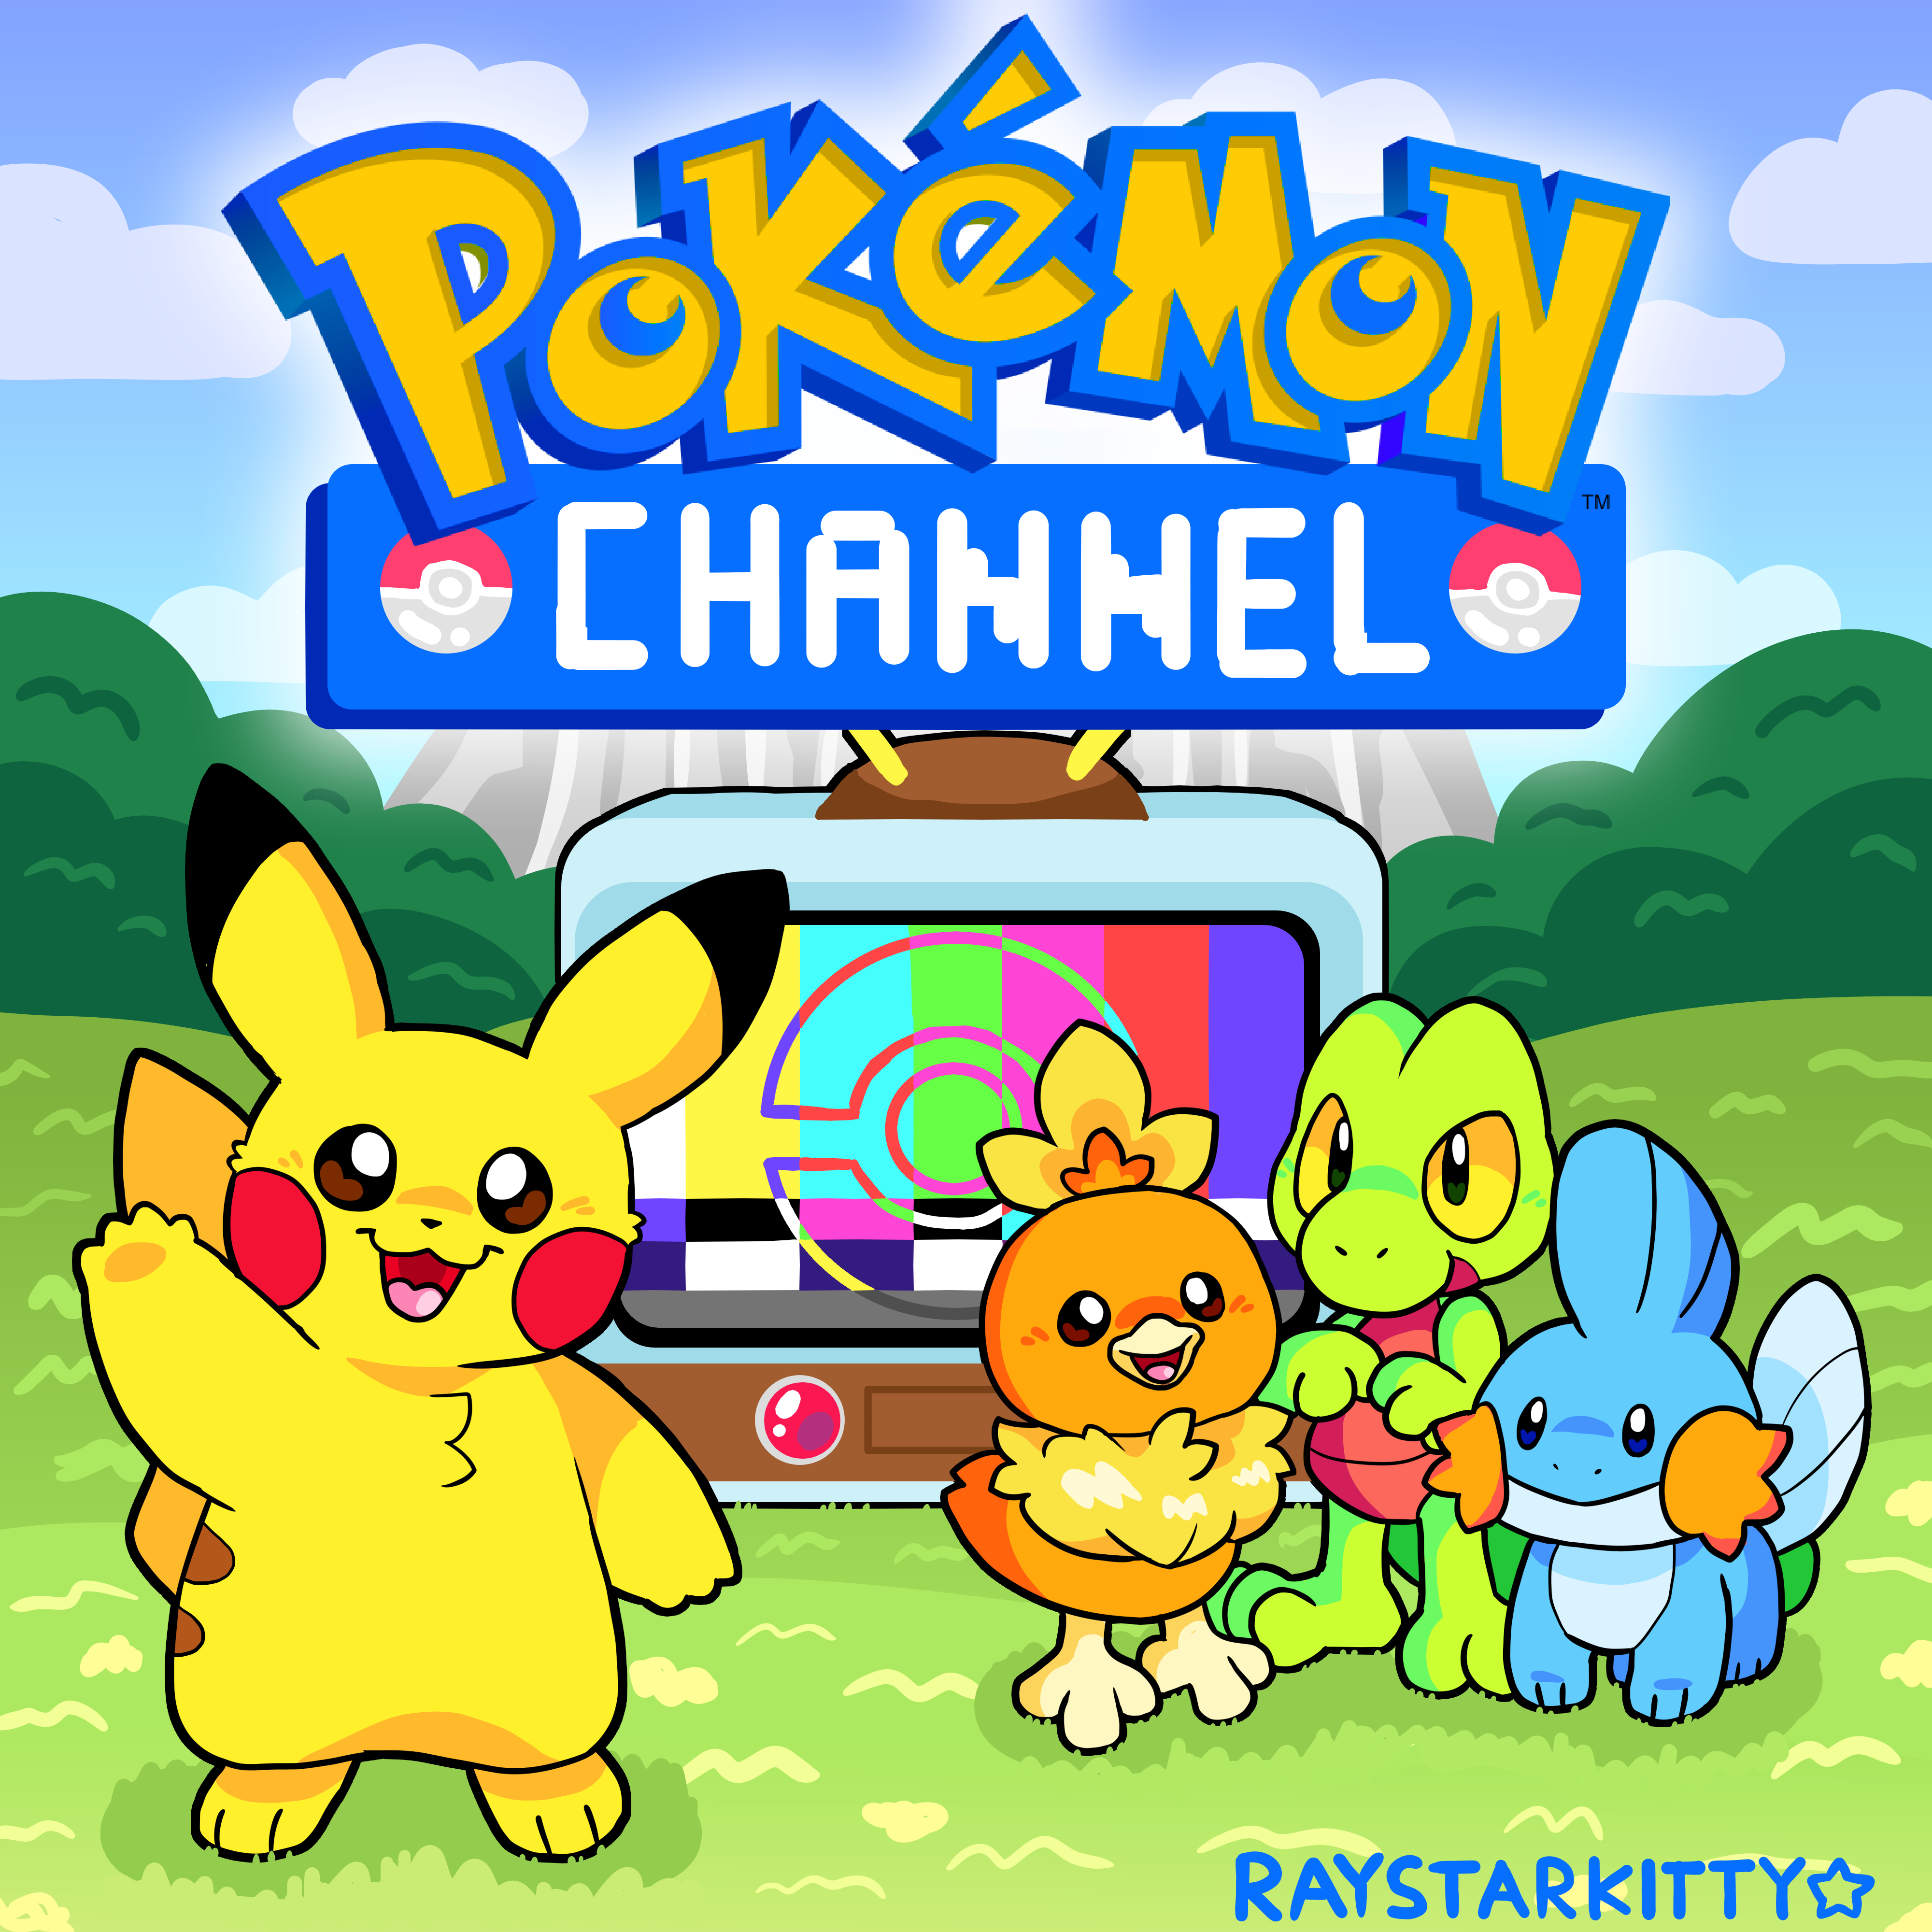 Pokemon Channel! by RayStarKitty on DeviantArt